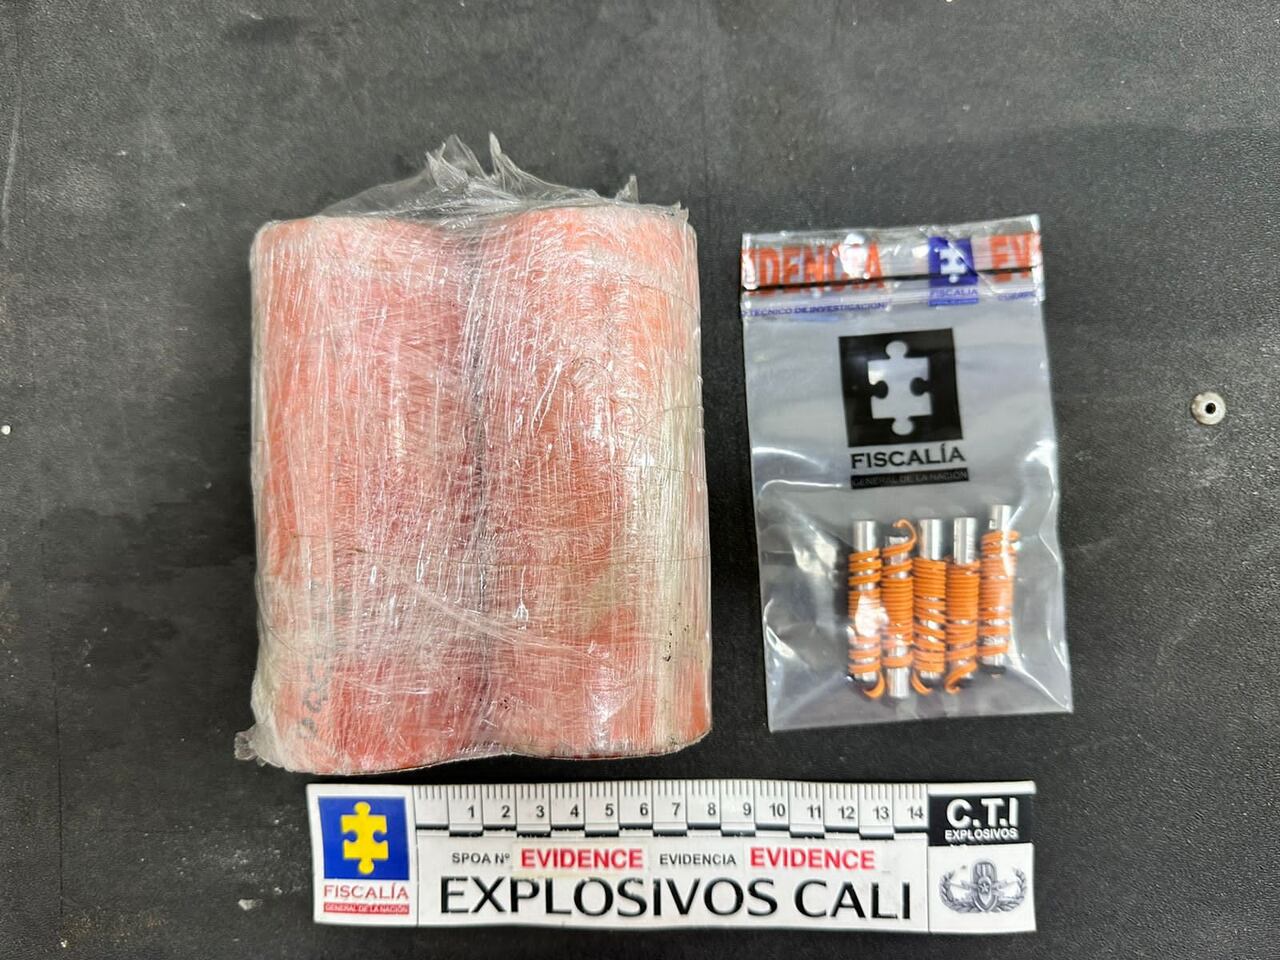 Al momento de su captura le fueron incautados más de 900 gramos de pentolita, 5 detonadores eléctricos, material de comunicaciones y documentación del grupo armado organizado residual Jaime Martínez.